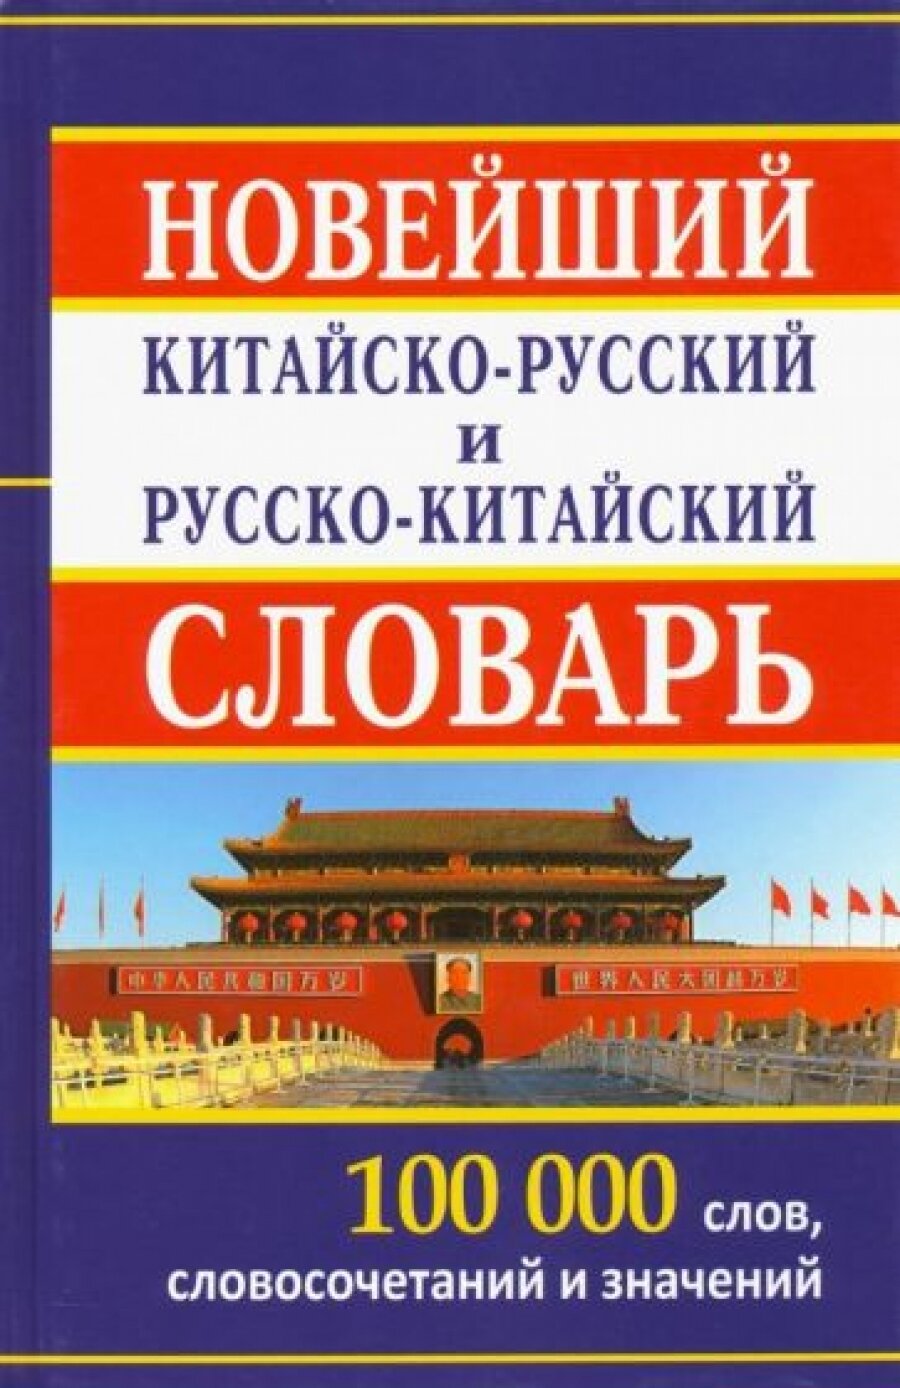 Китайско-русский русско-китайский словарь. 100 000 слов и словосочетаний. /Левина.